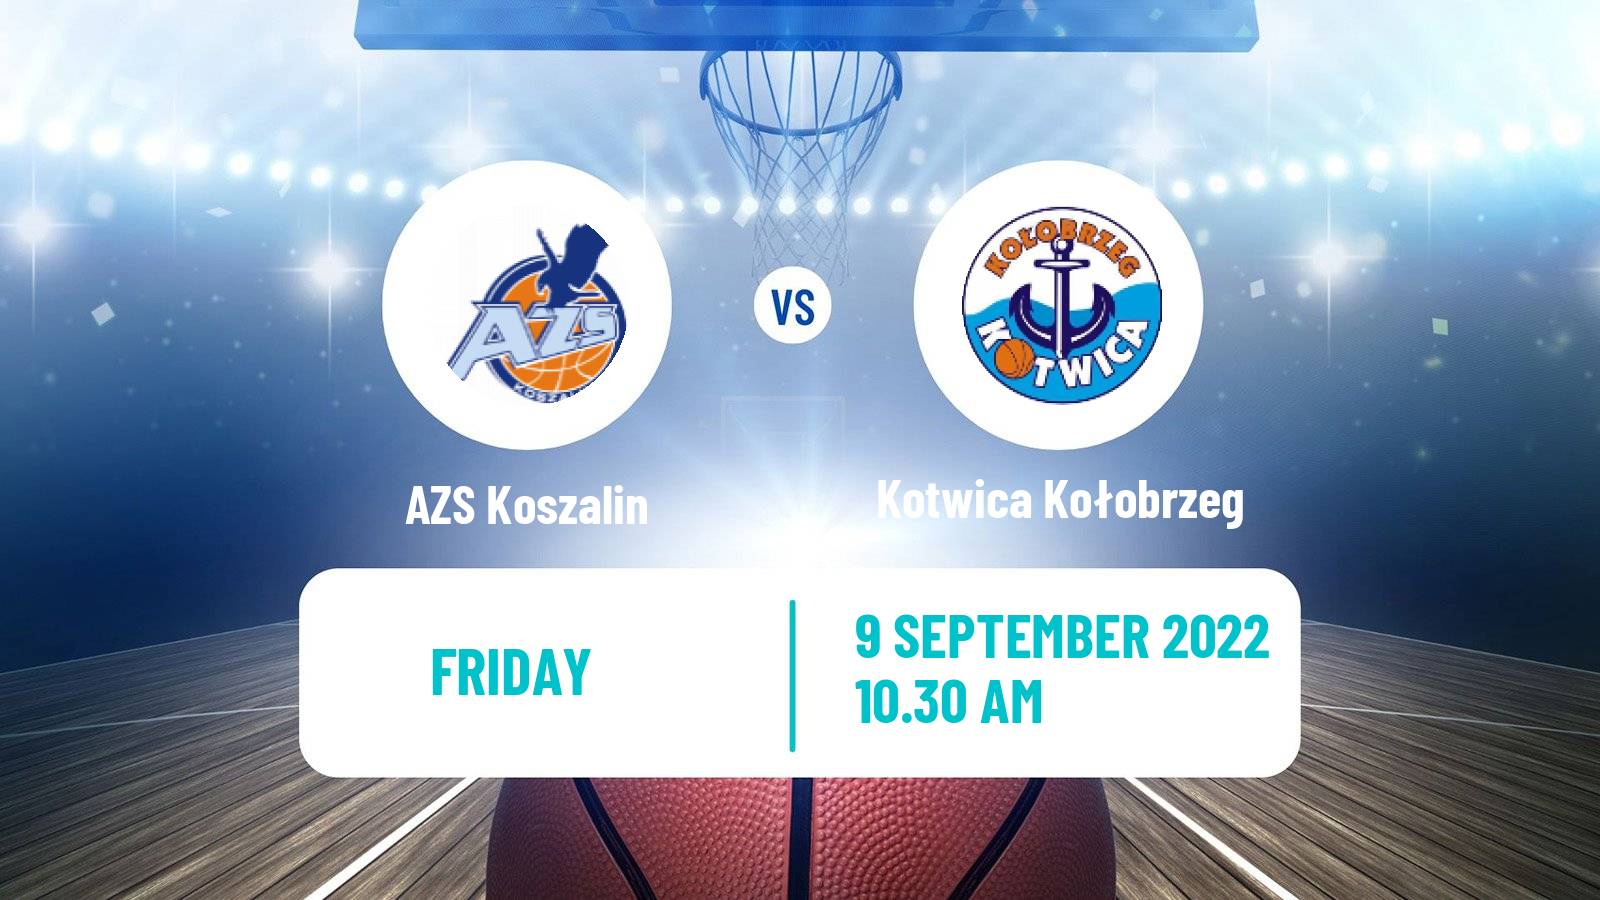 Basketball Club Friendly Basketball AZS Koszalin - Kotwica Kołobrzeg